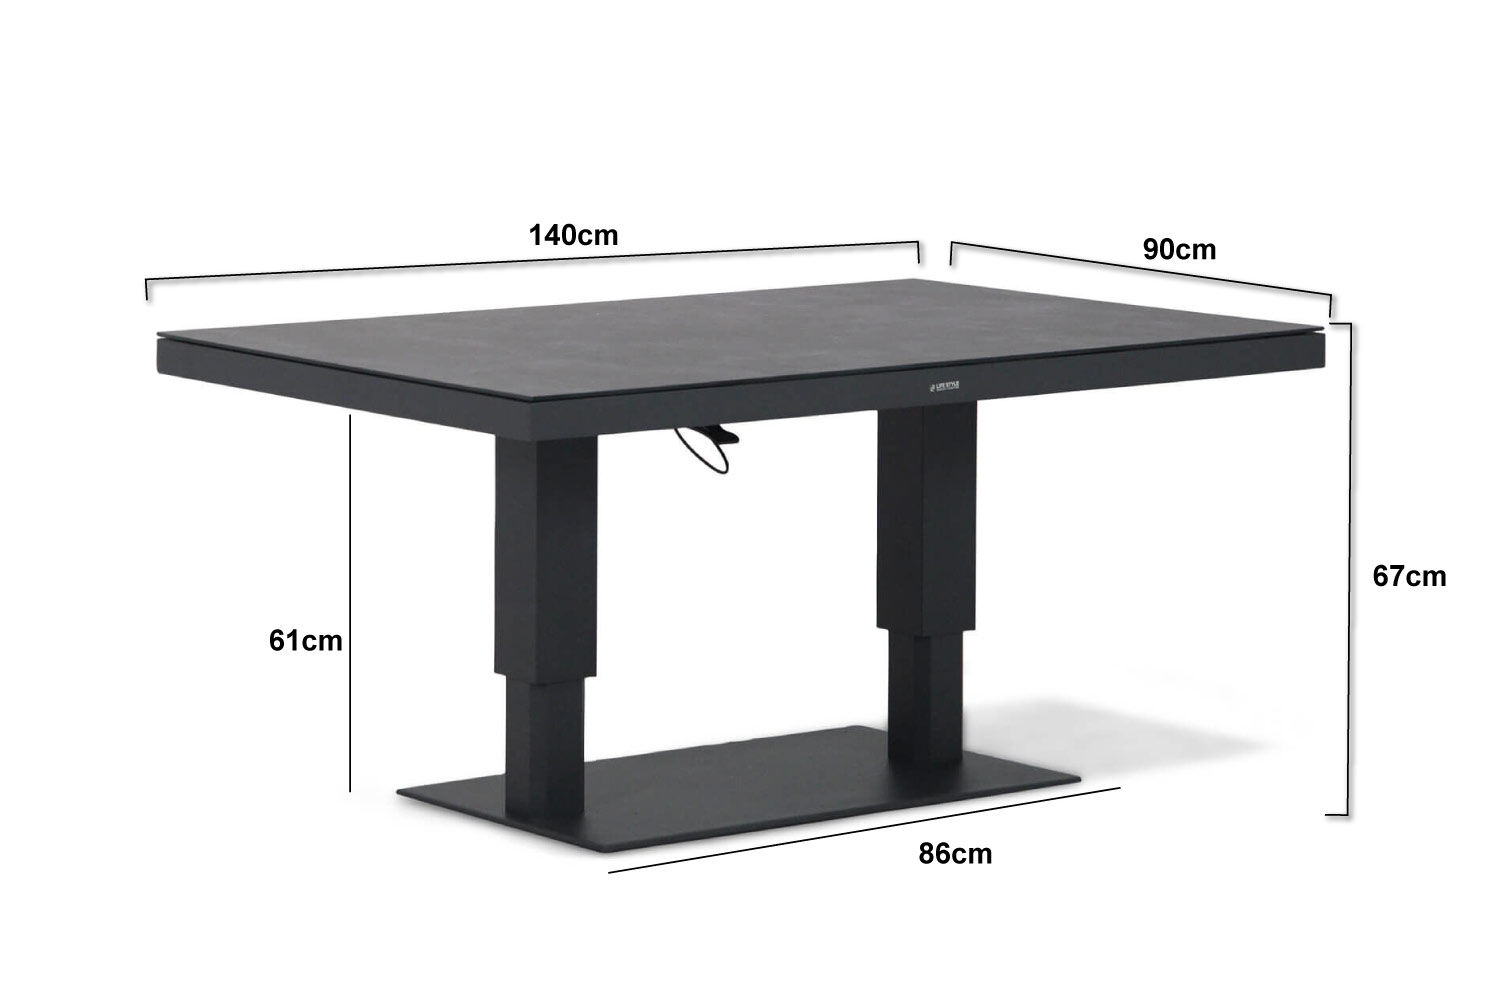 Classificeren site Knop Lifestyle Versatile in hoogte verstelbare tafel 140x80cm